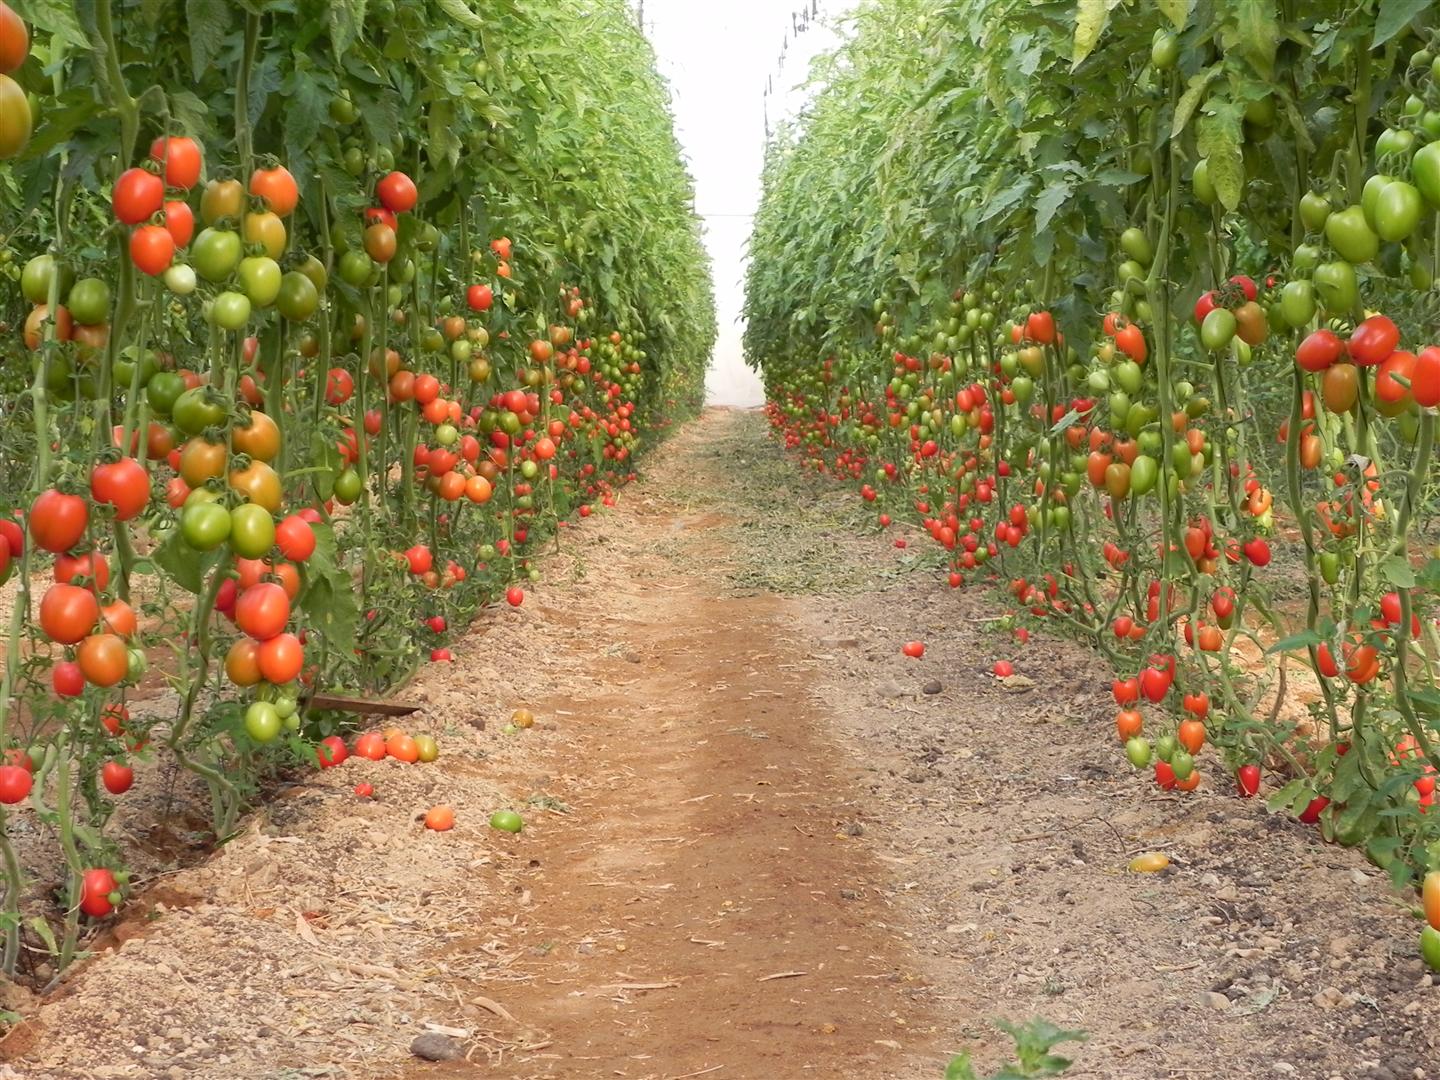 לקטוף מכל הבא ליד. עגבניות שרי ב"מלוא הטנא" (צילום: זיו ריינשטיין) (צילום: זיו ריינשטיין)